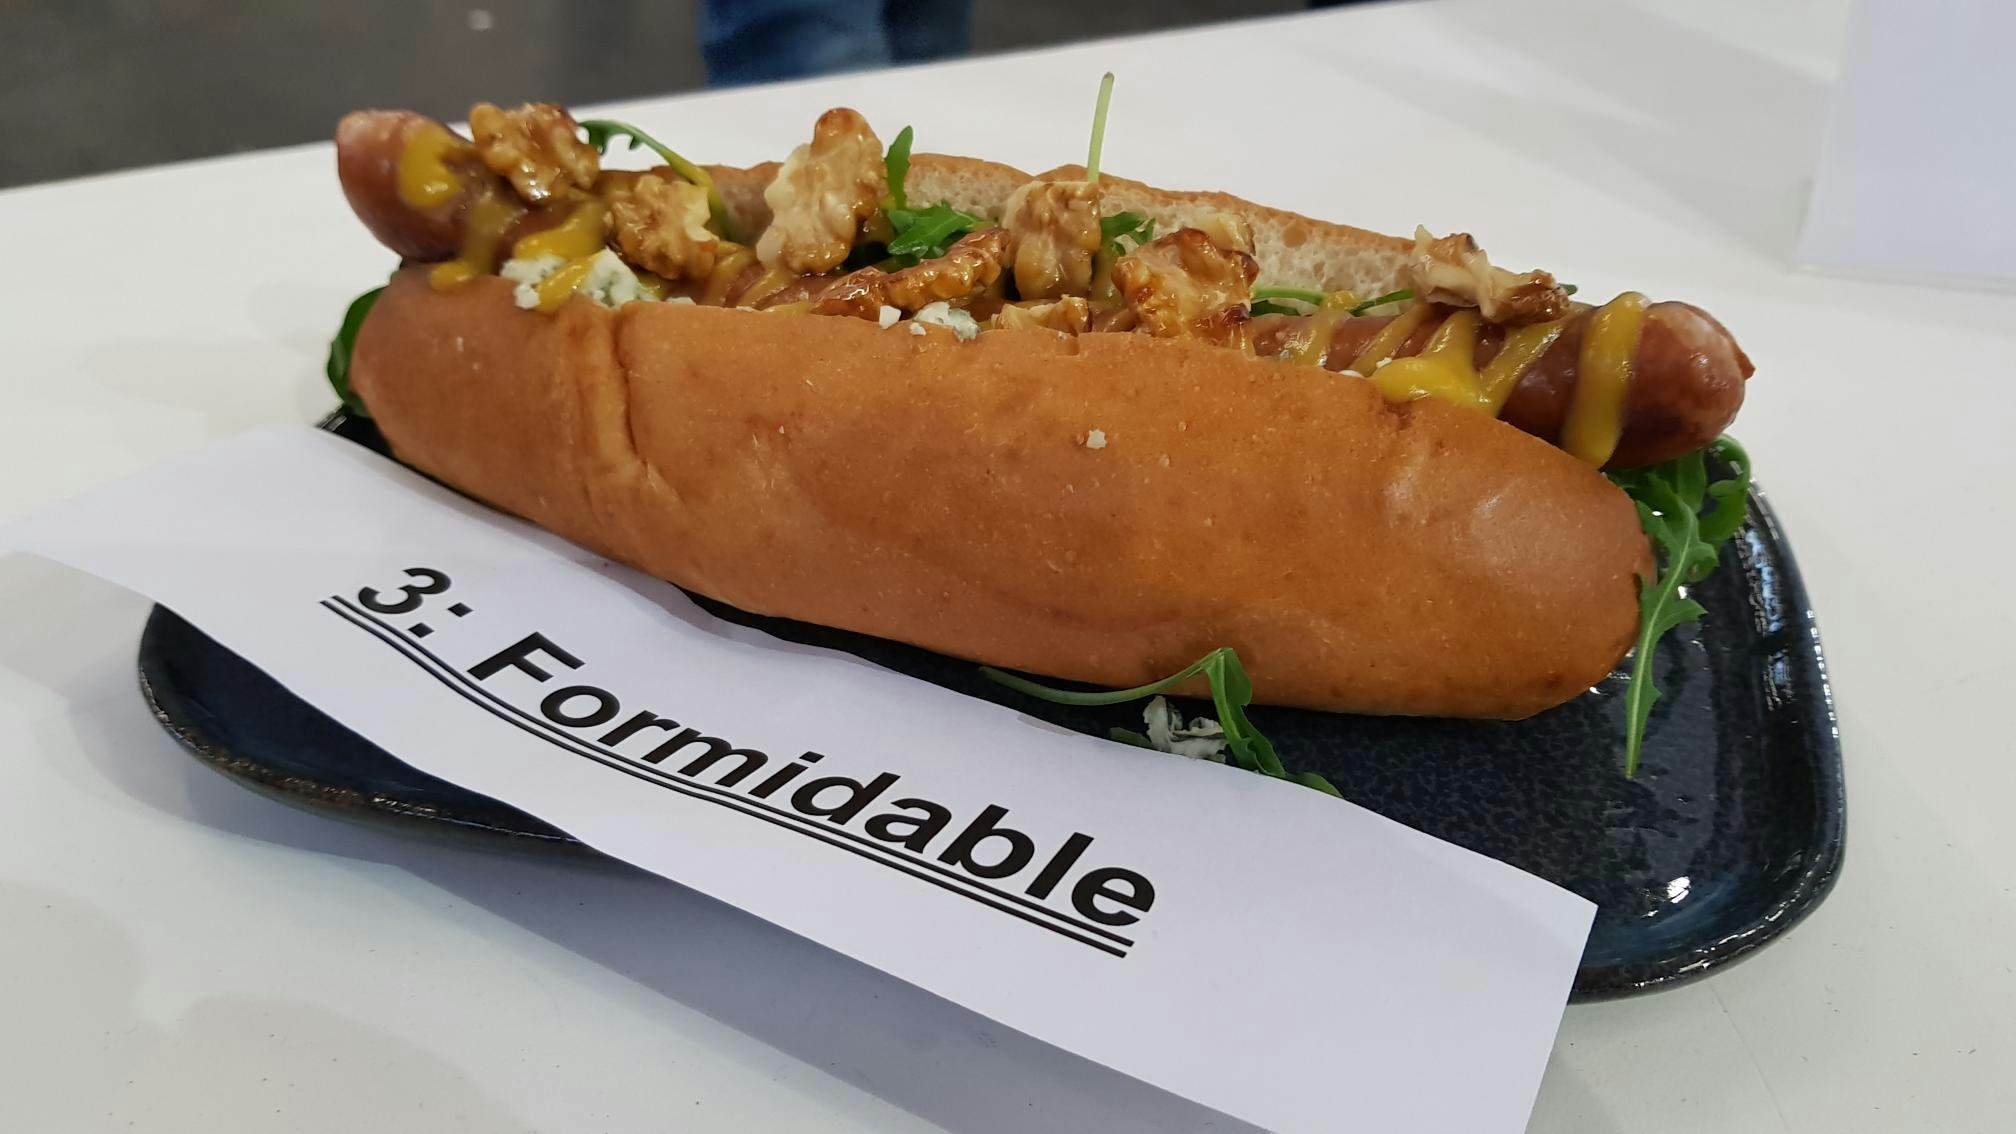 Horecava 2019: alle hotdogs Lekkerste Hotdog op een rij